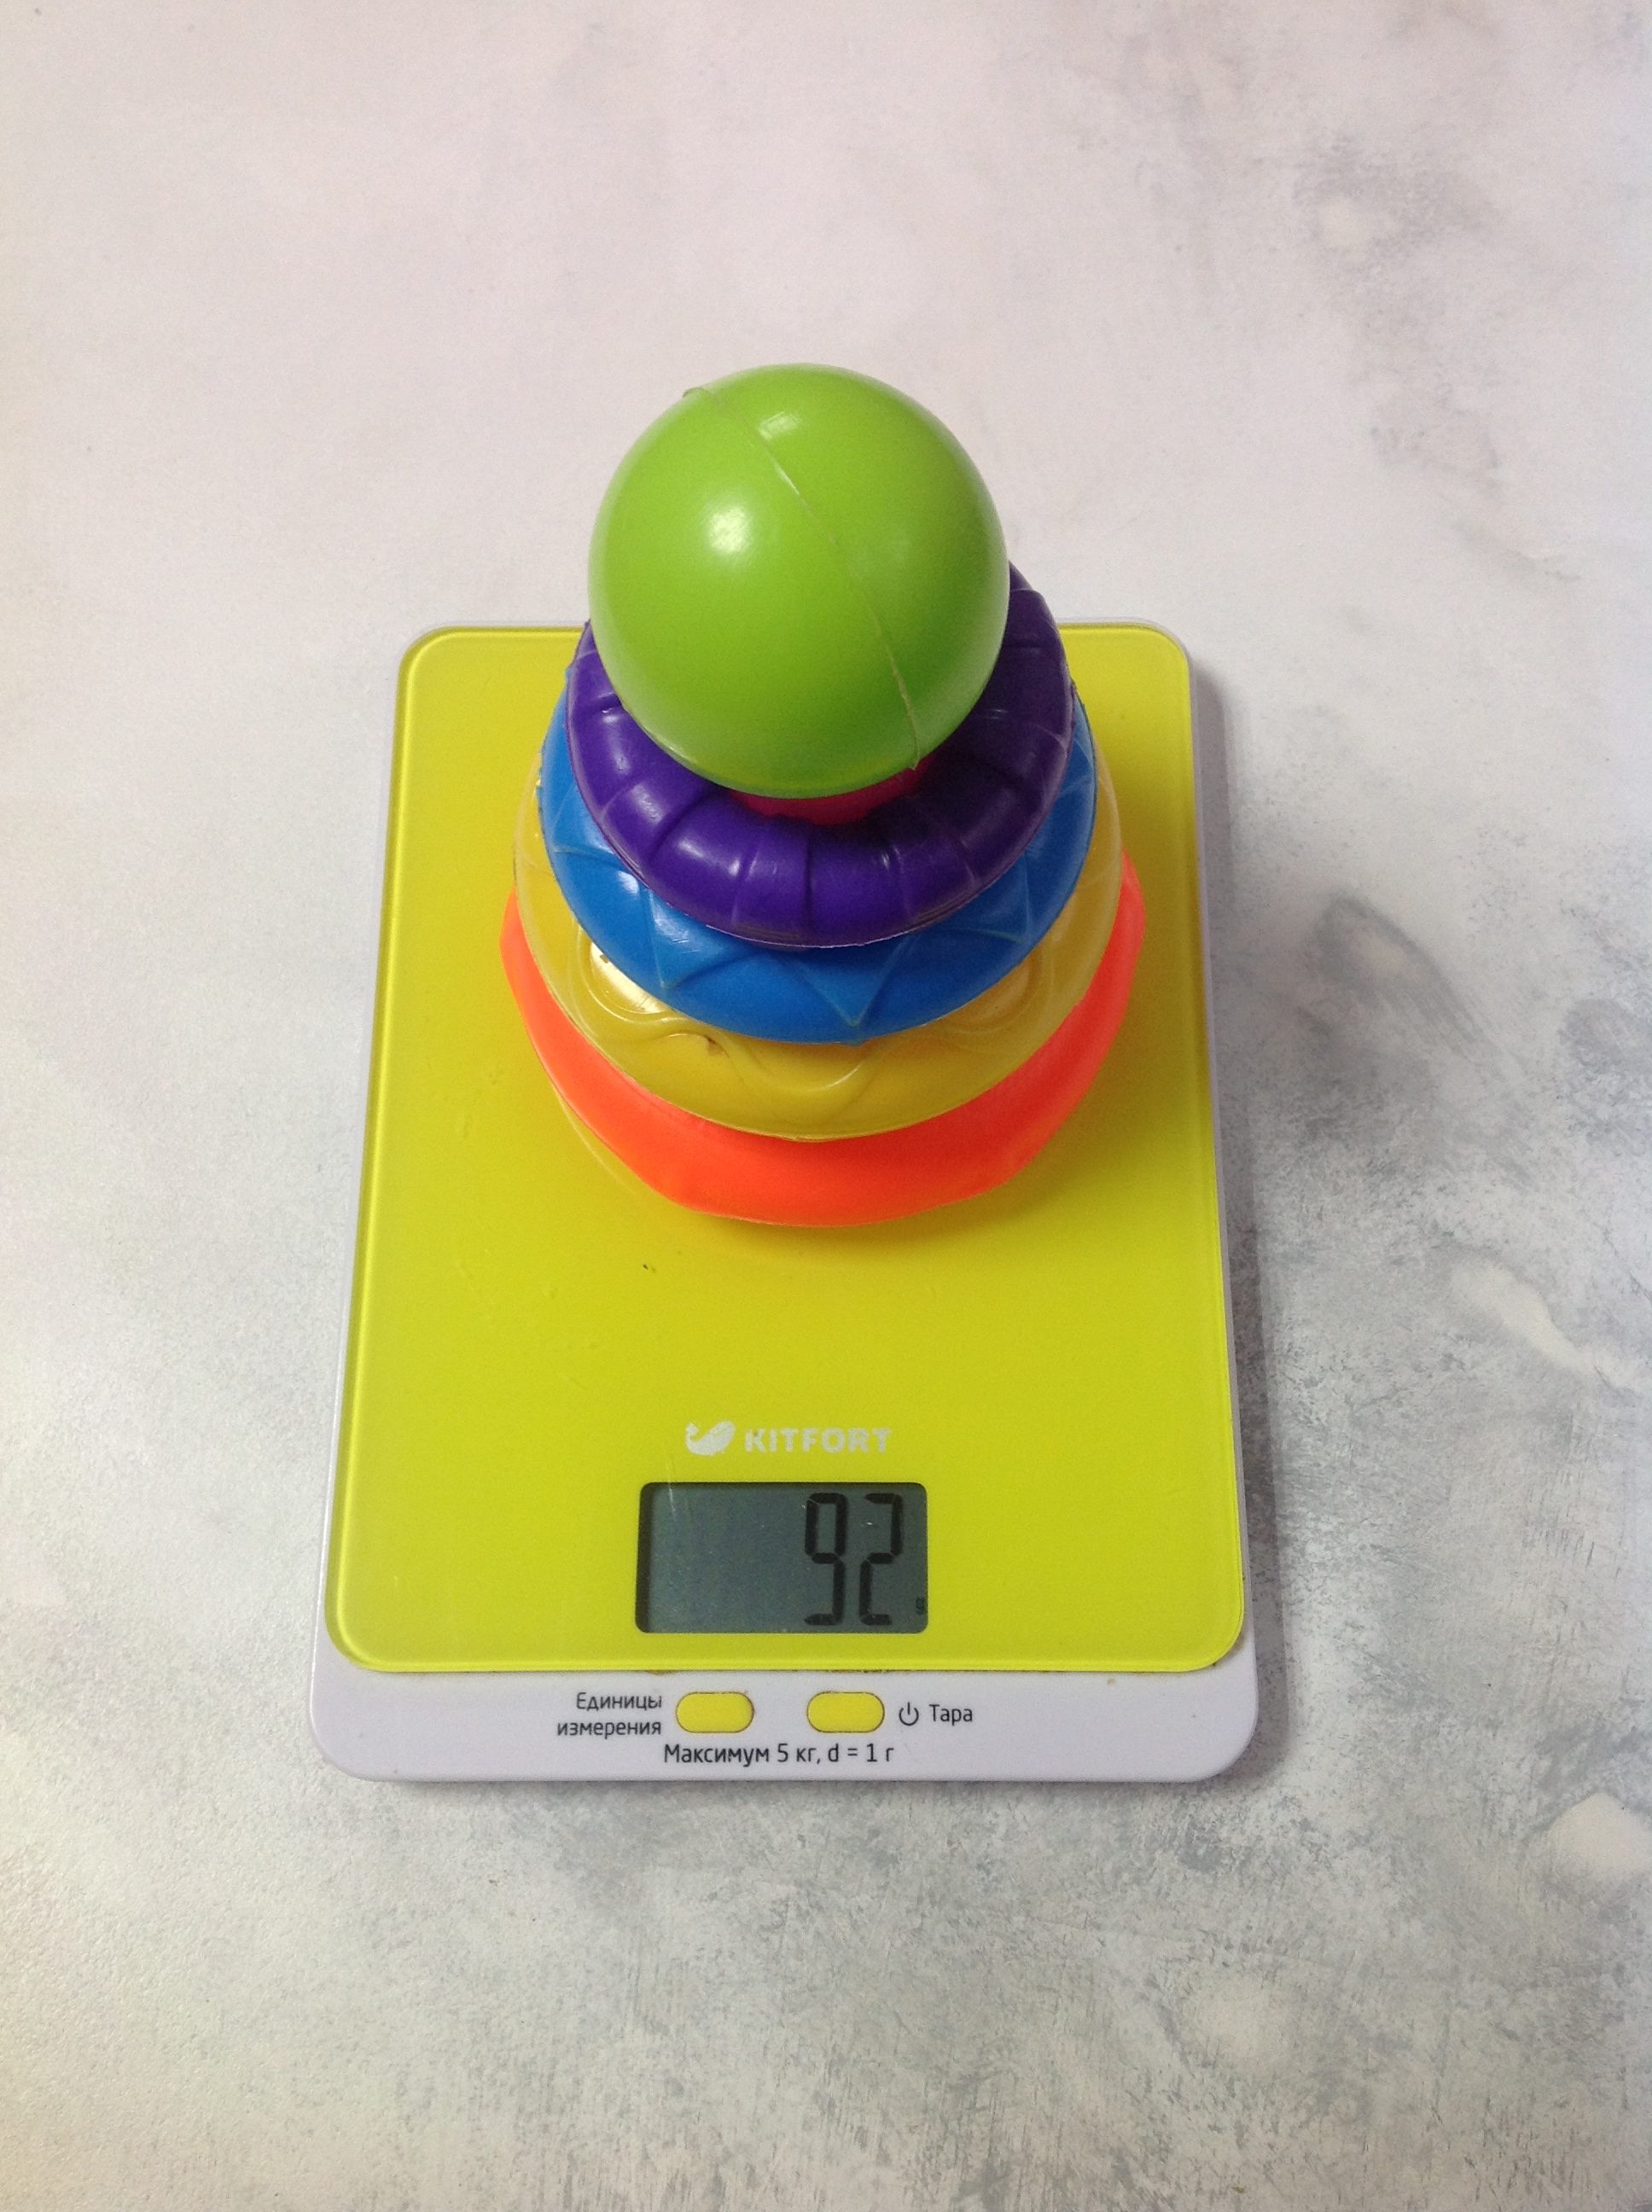 Bir çocuğun plastik piramit oyuncağının ağırlığı ne kadardır?